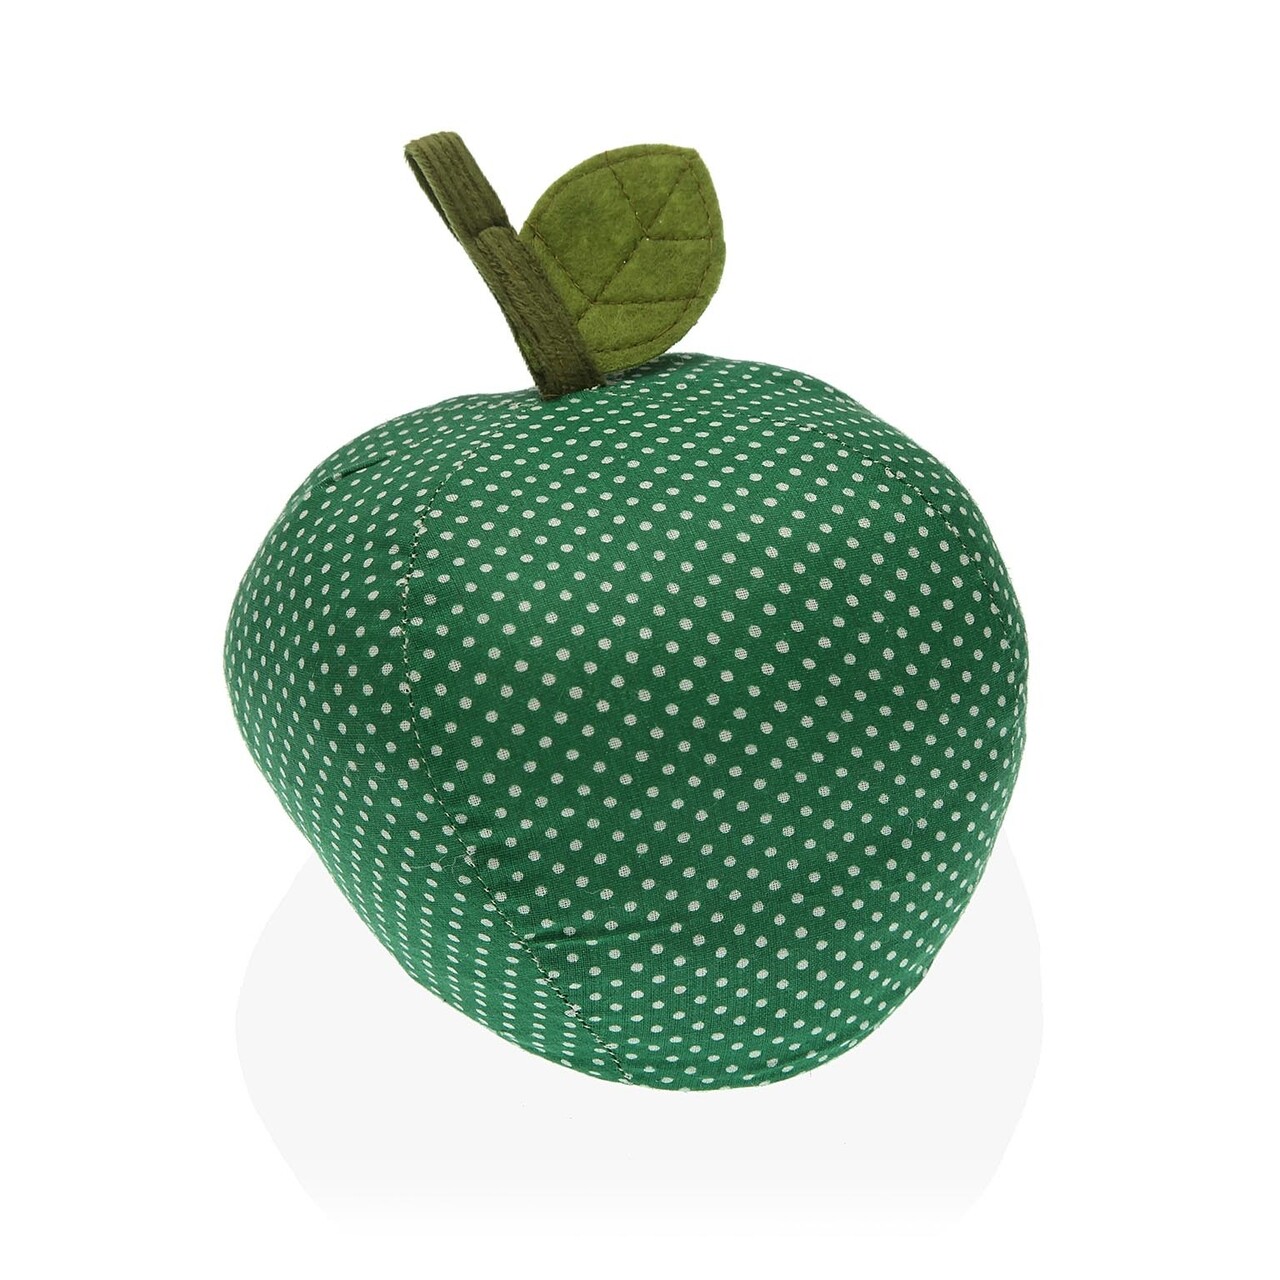 Apple Ajtótámasz, Versa, 14 x 14 x 20 cm, poliészter